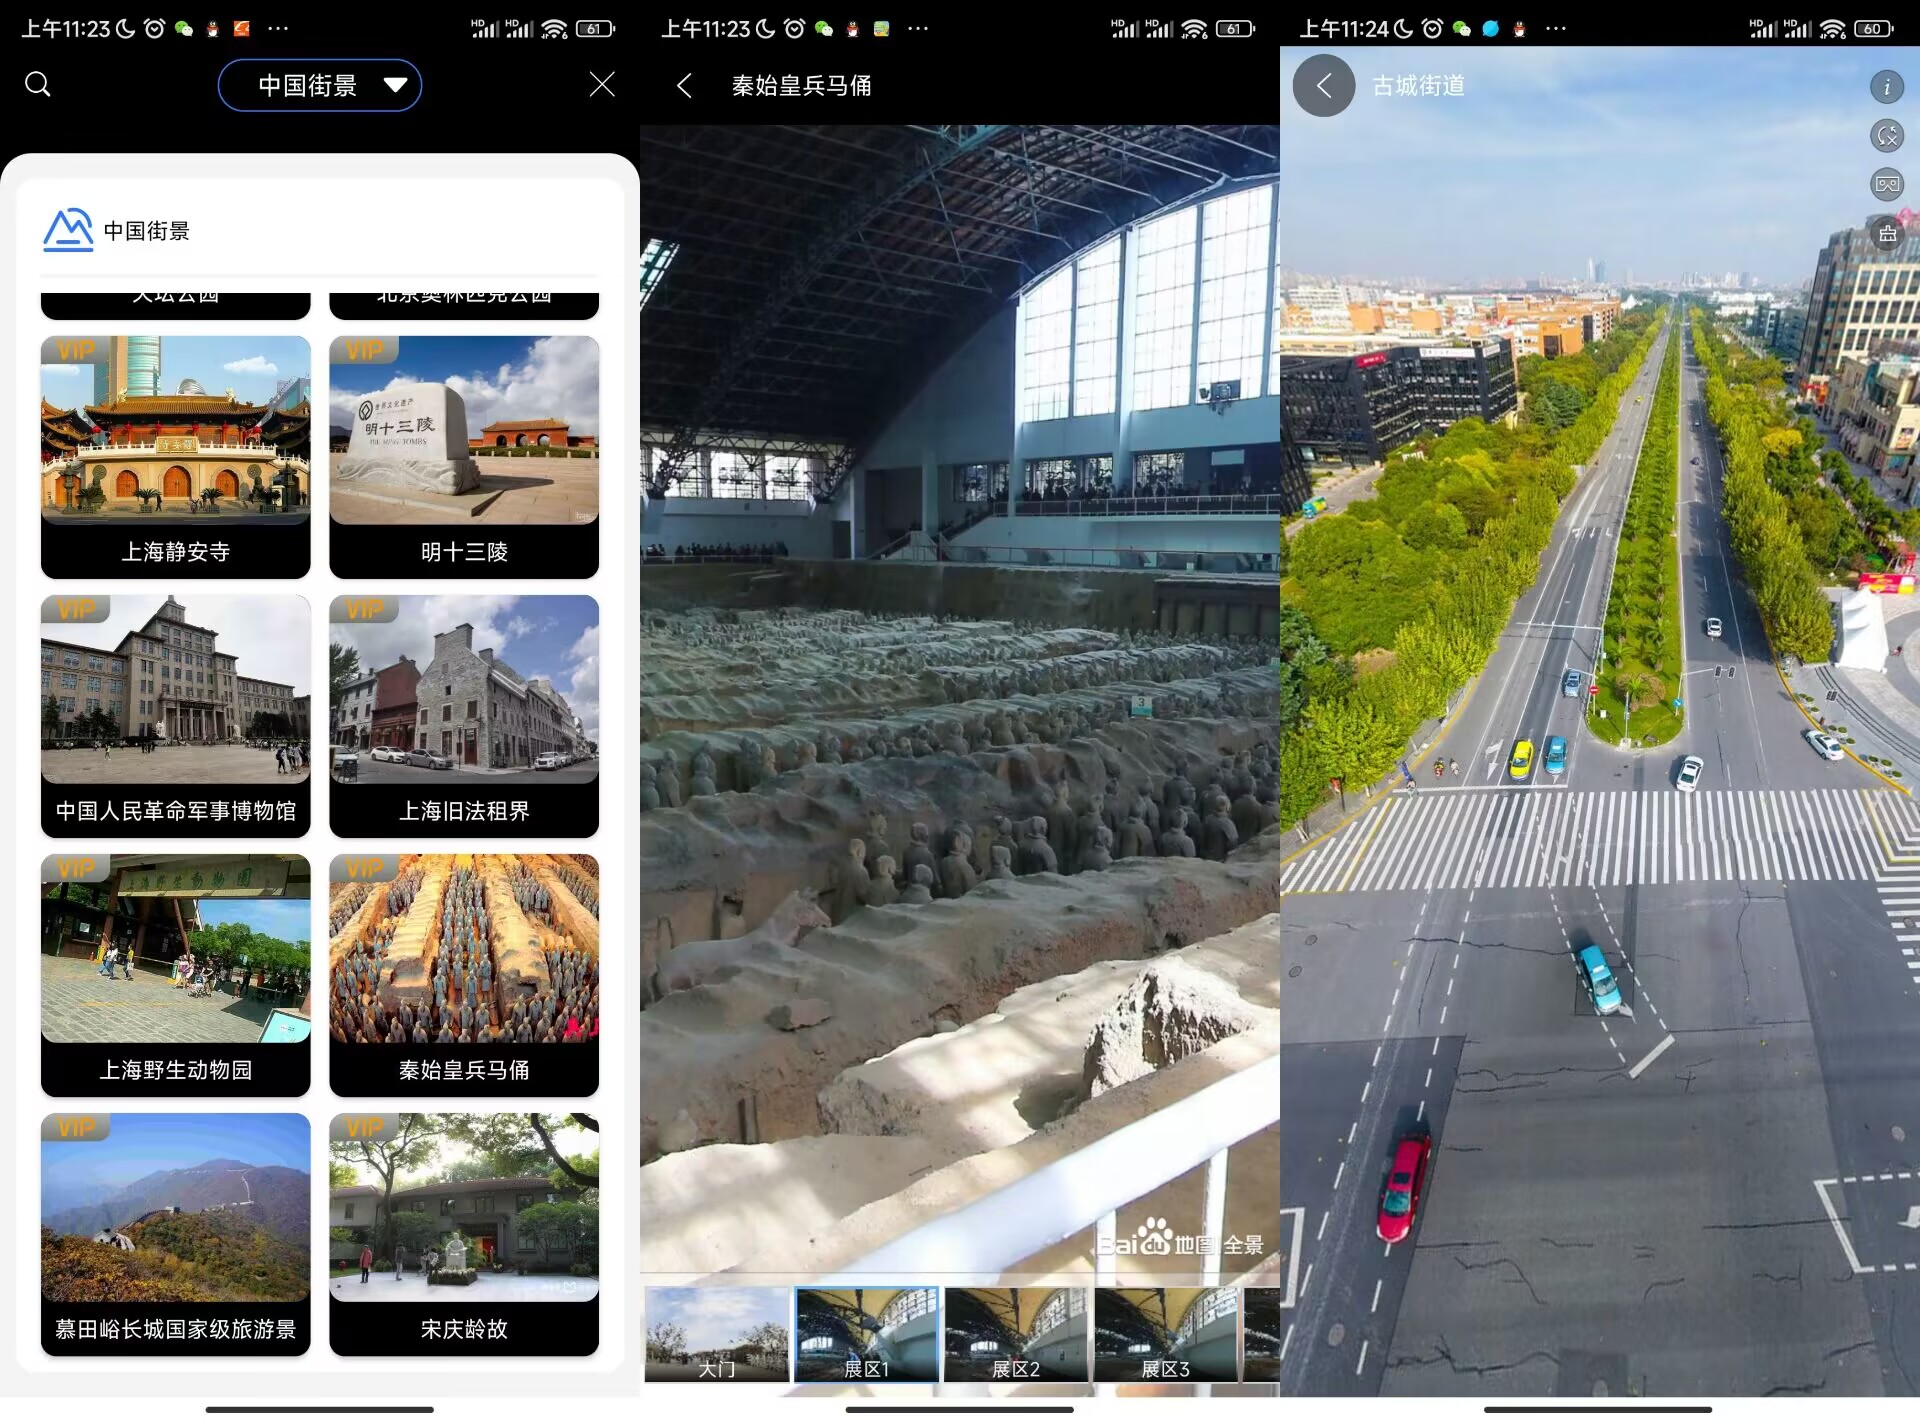 地球街景地图 App 世界各地的街景